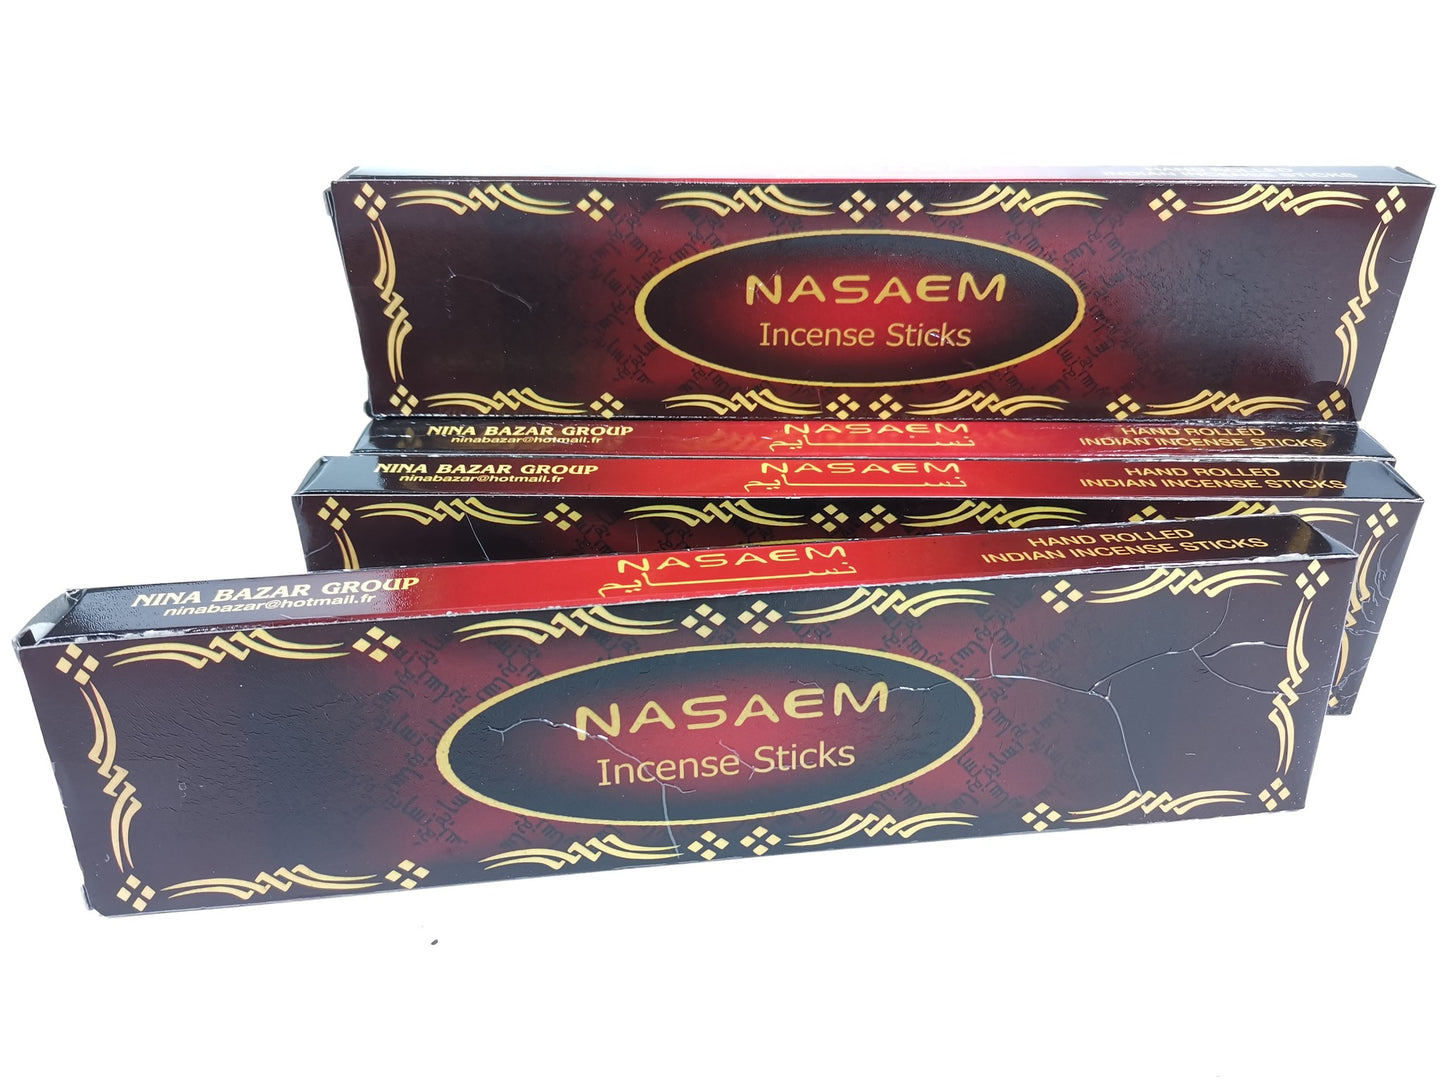 NASAEM Incense Sticks